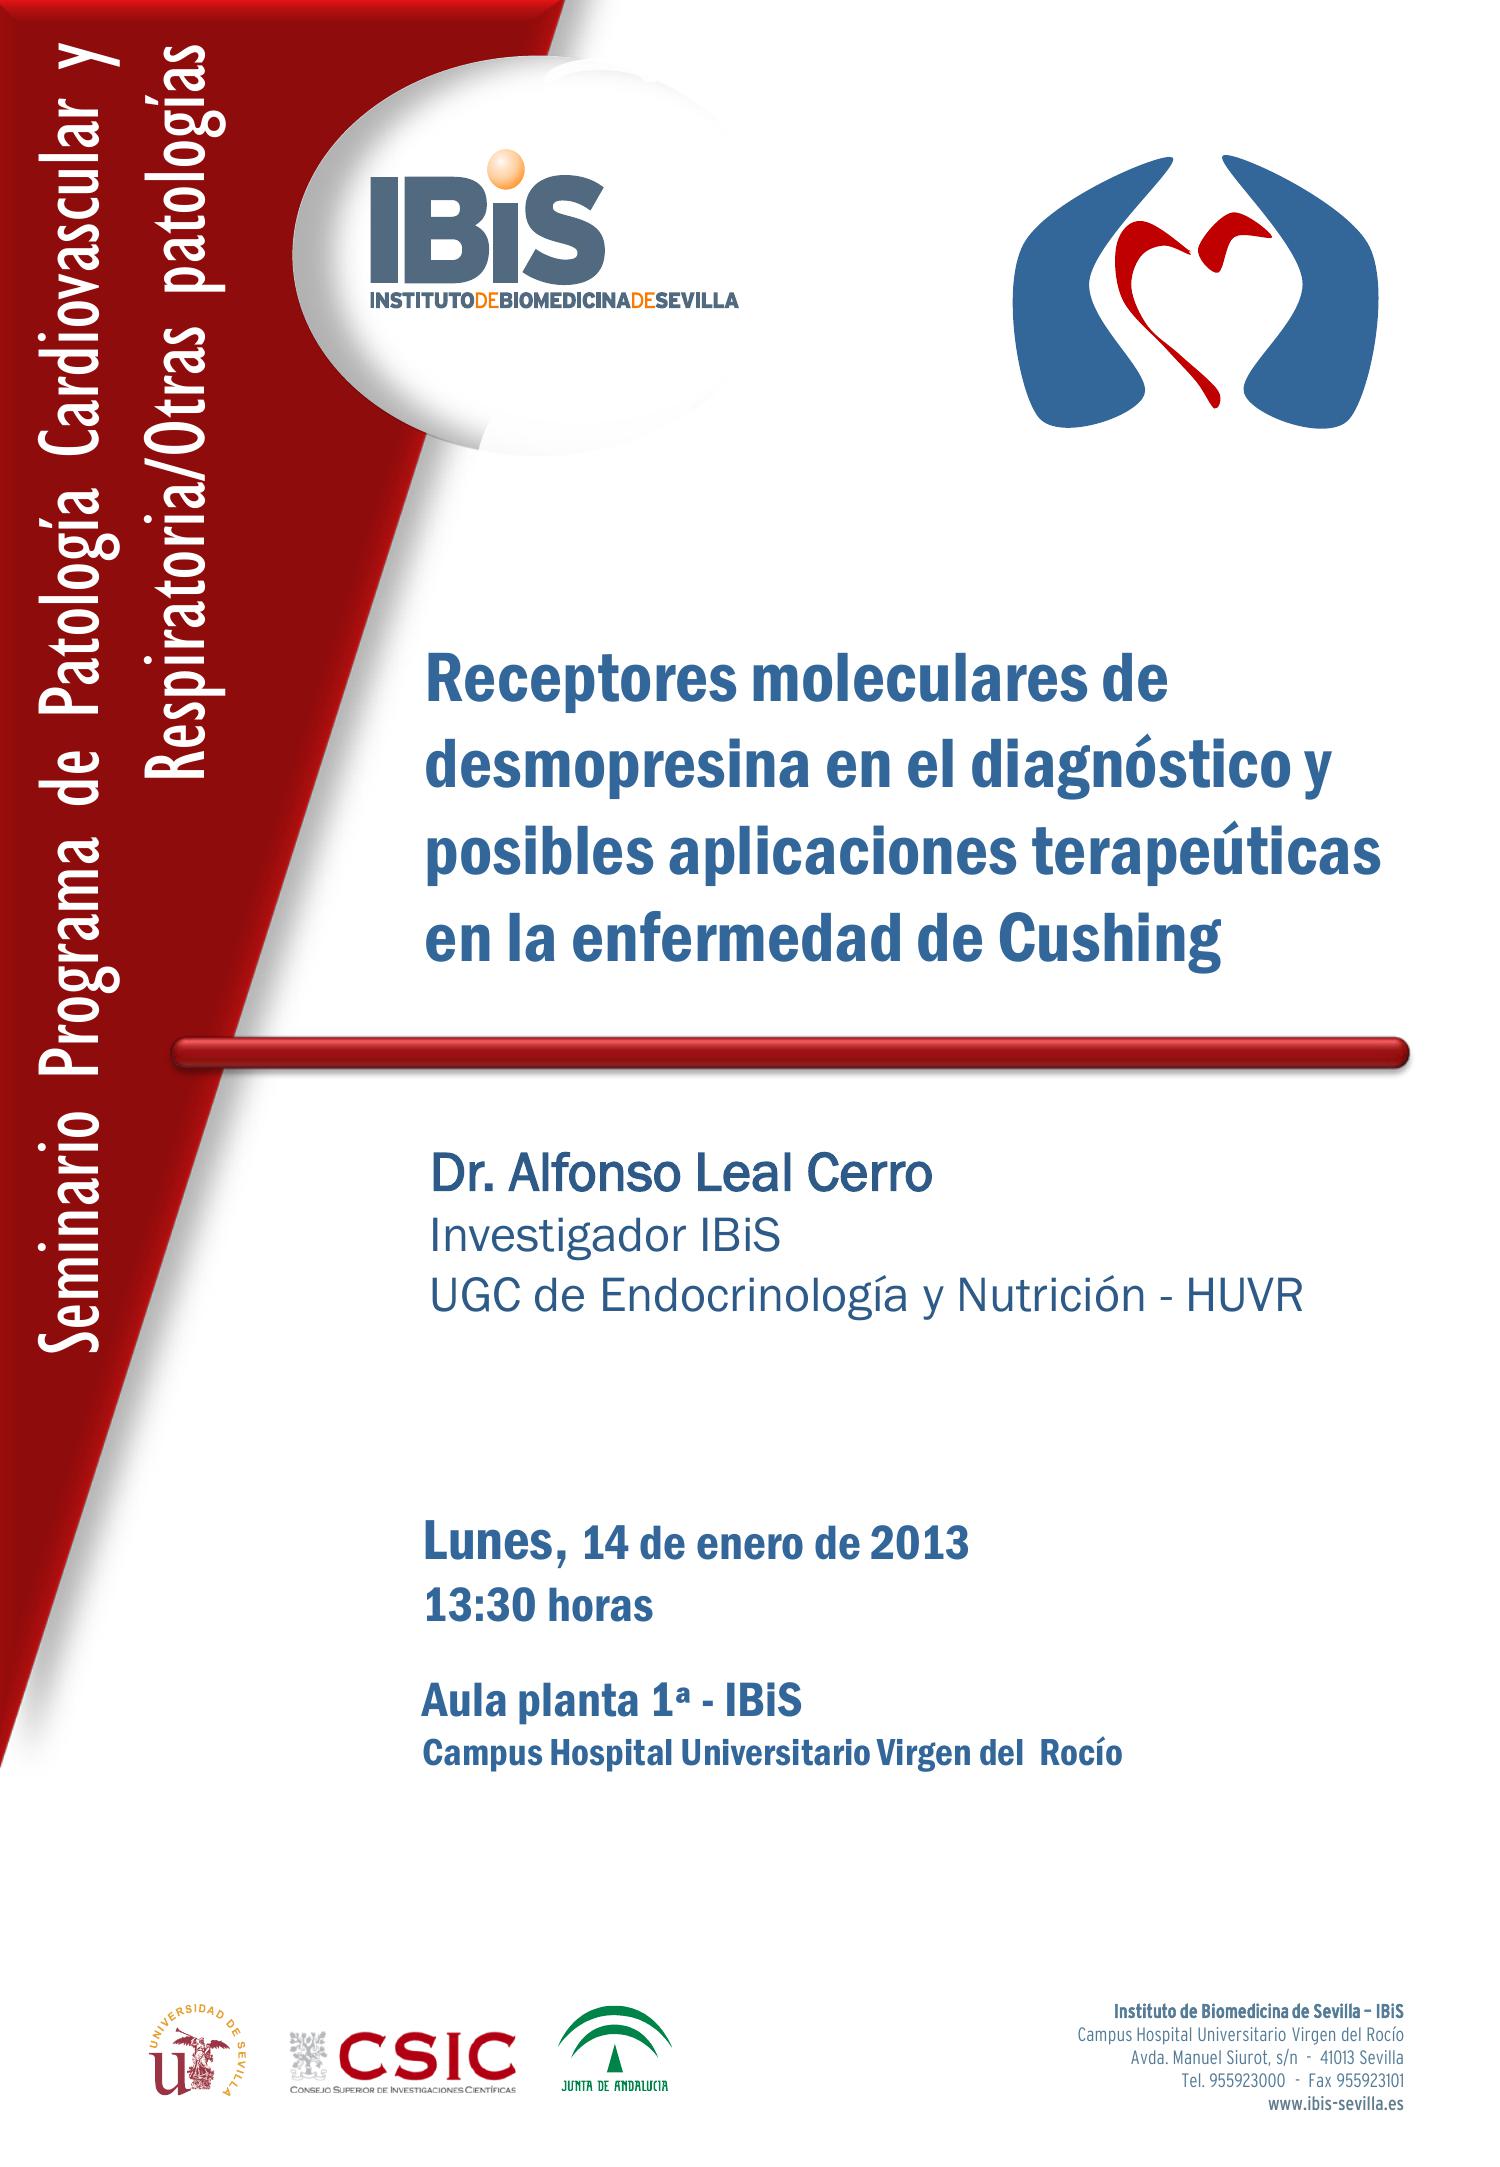 Poster: Receptores moleculares de desmopresina en el diagnóstico y posibles aplicaciones terapeúticas en la enfermedad de Cushing.